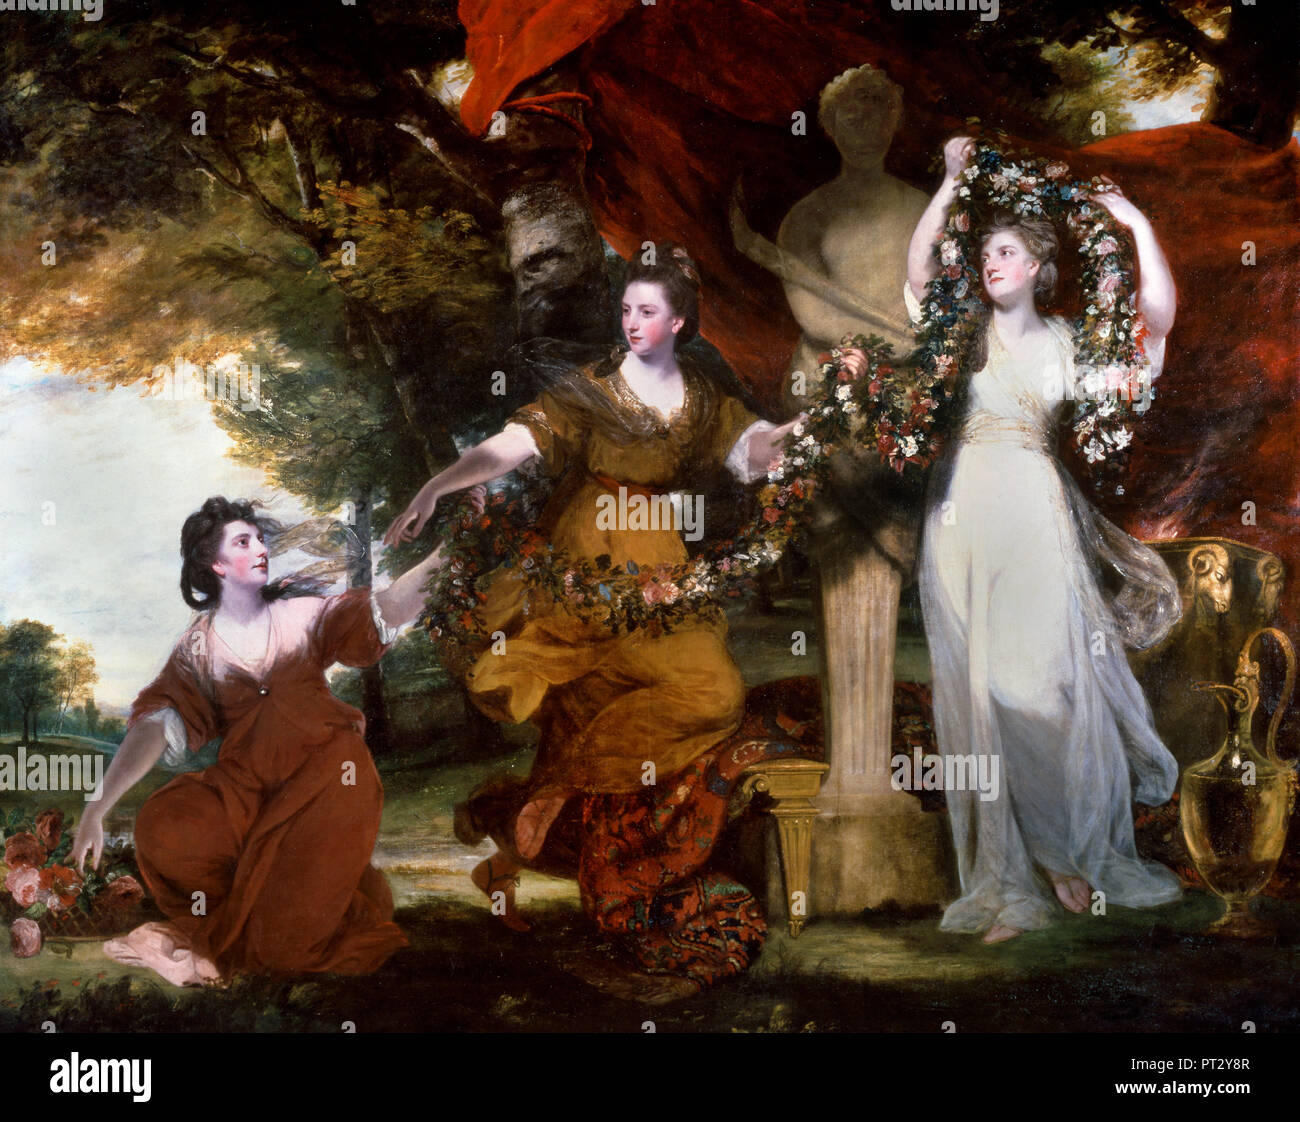 Joshua Reynolds, tre onorevoli colleghe che ornano un termine del imene 1773 olio su tela, Tate Britain, Londra, Inghilterra. Foto Stock